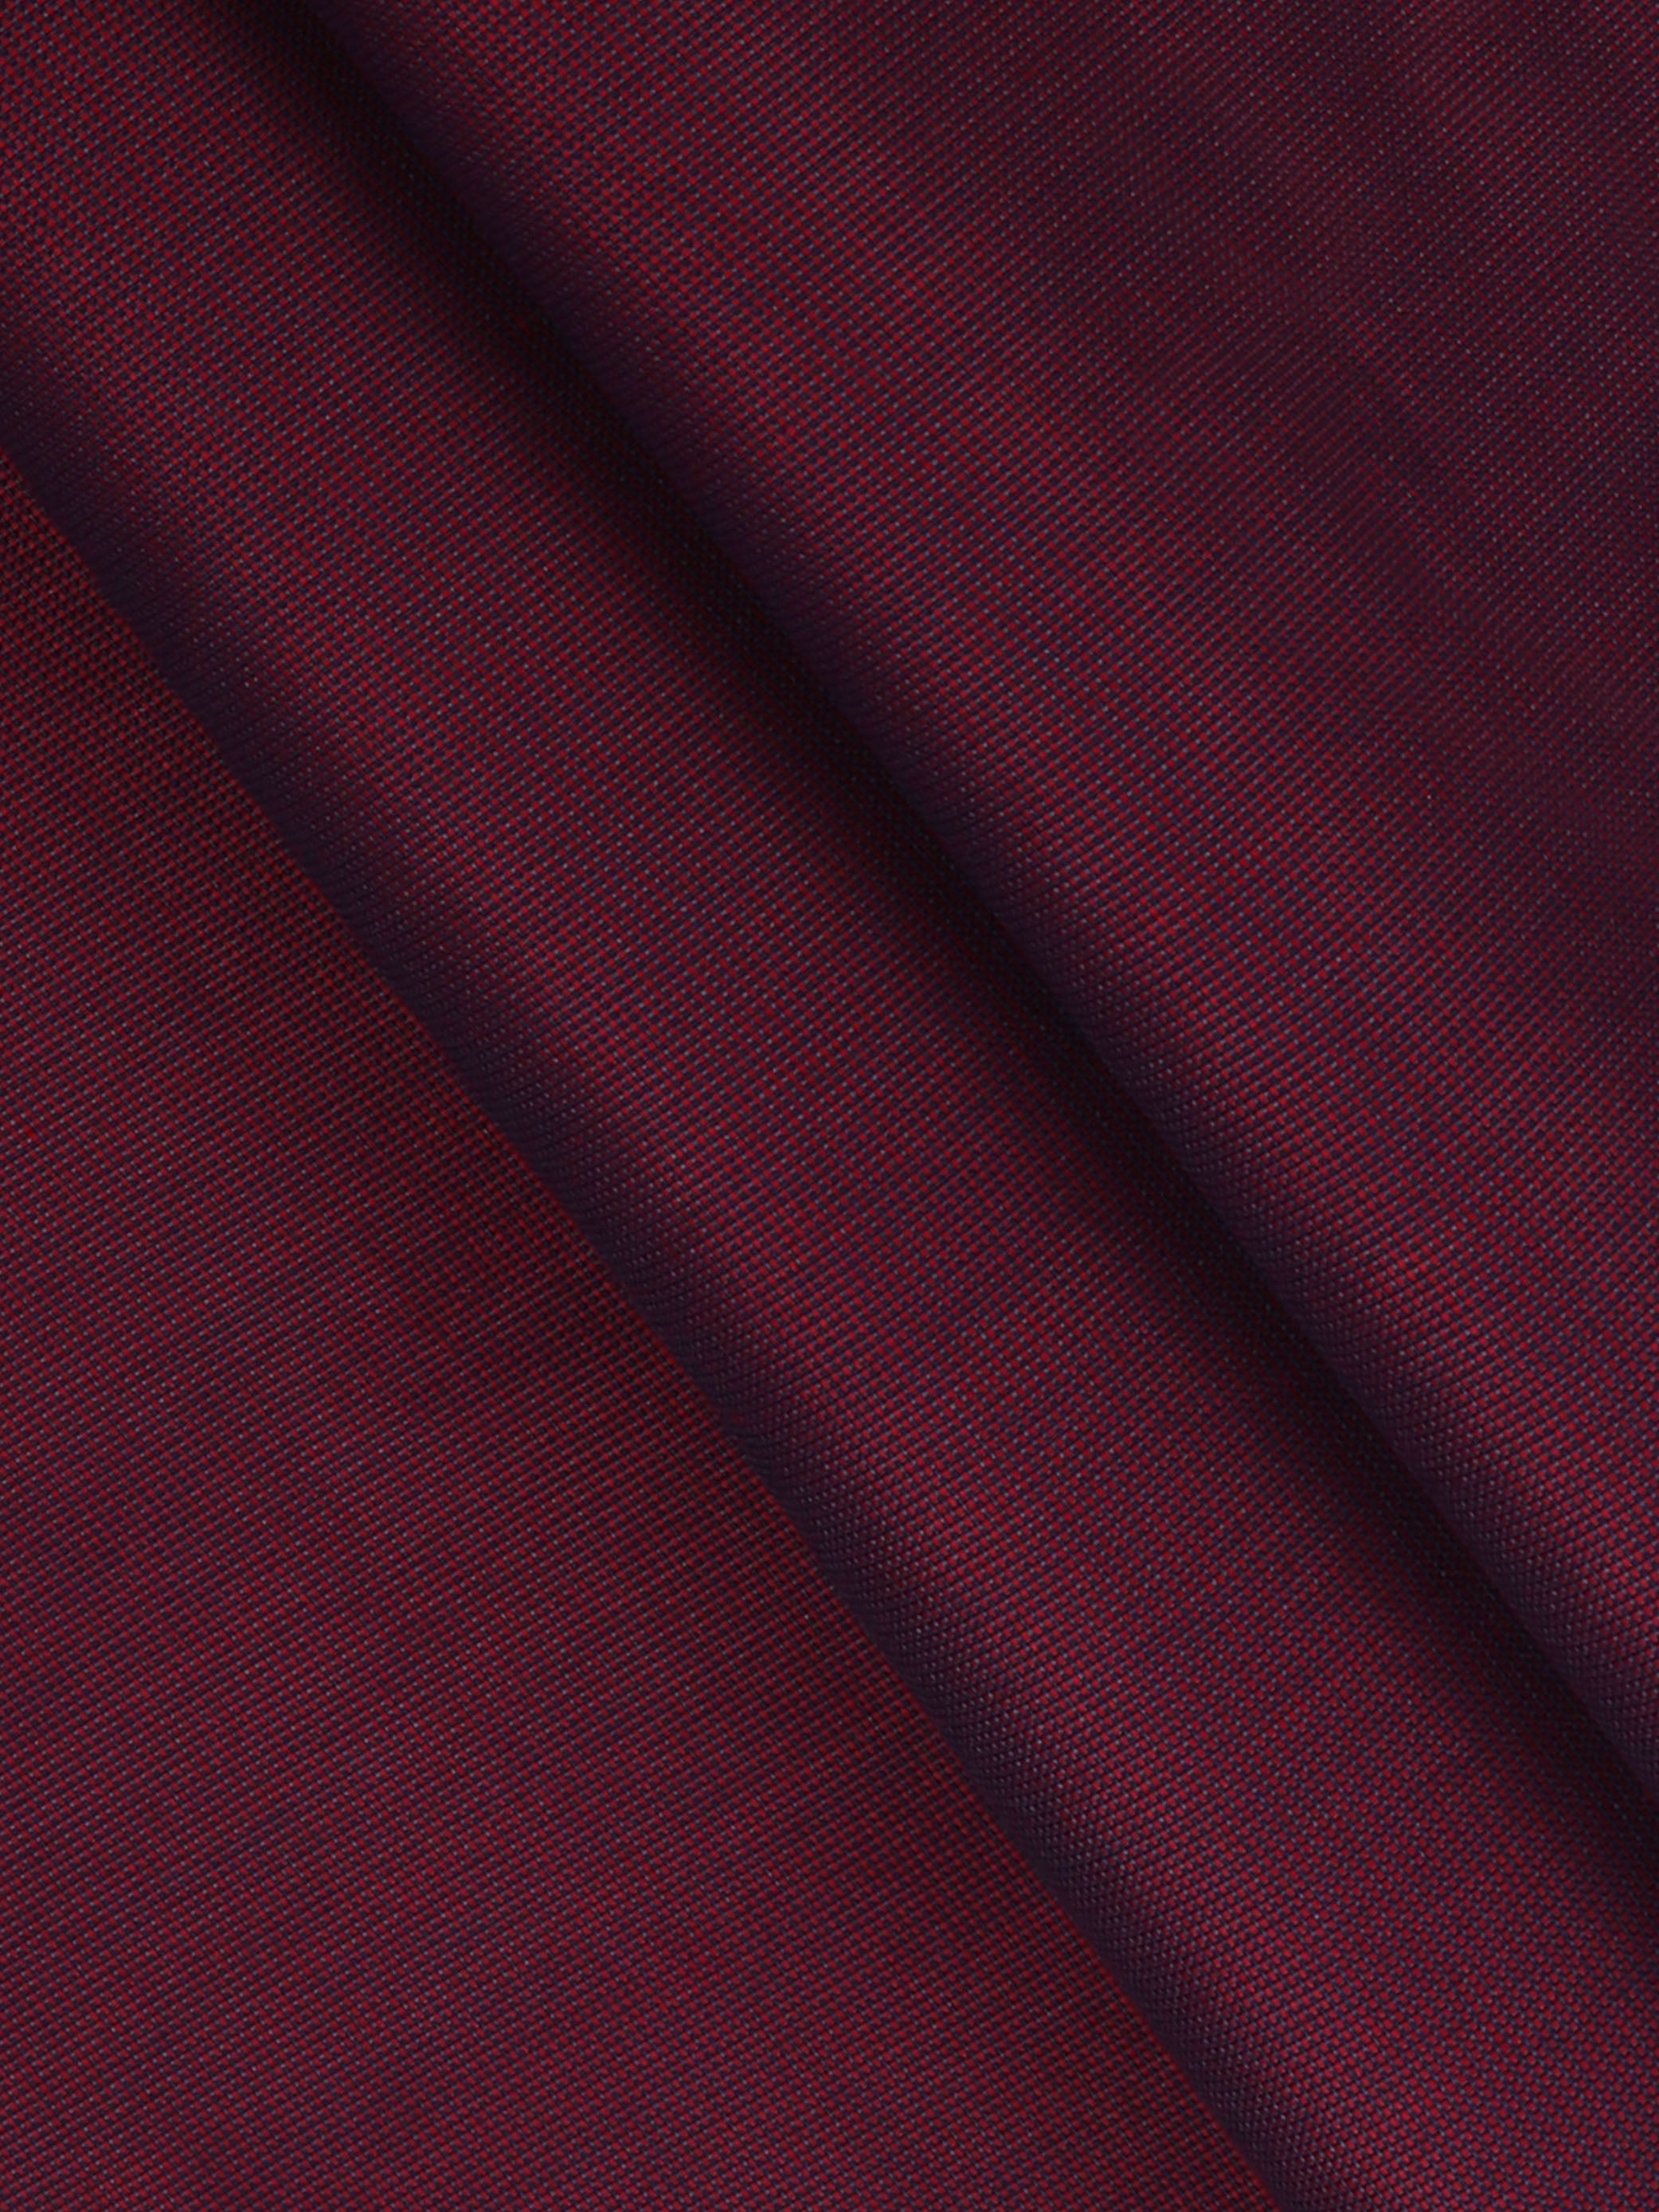 Cotton Mixed Plain Shirt Fabric Purple Vaibha-Pattern view